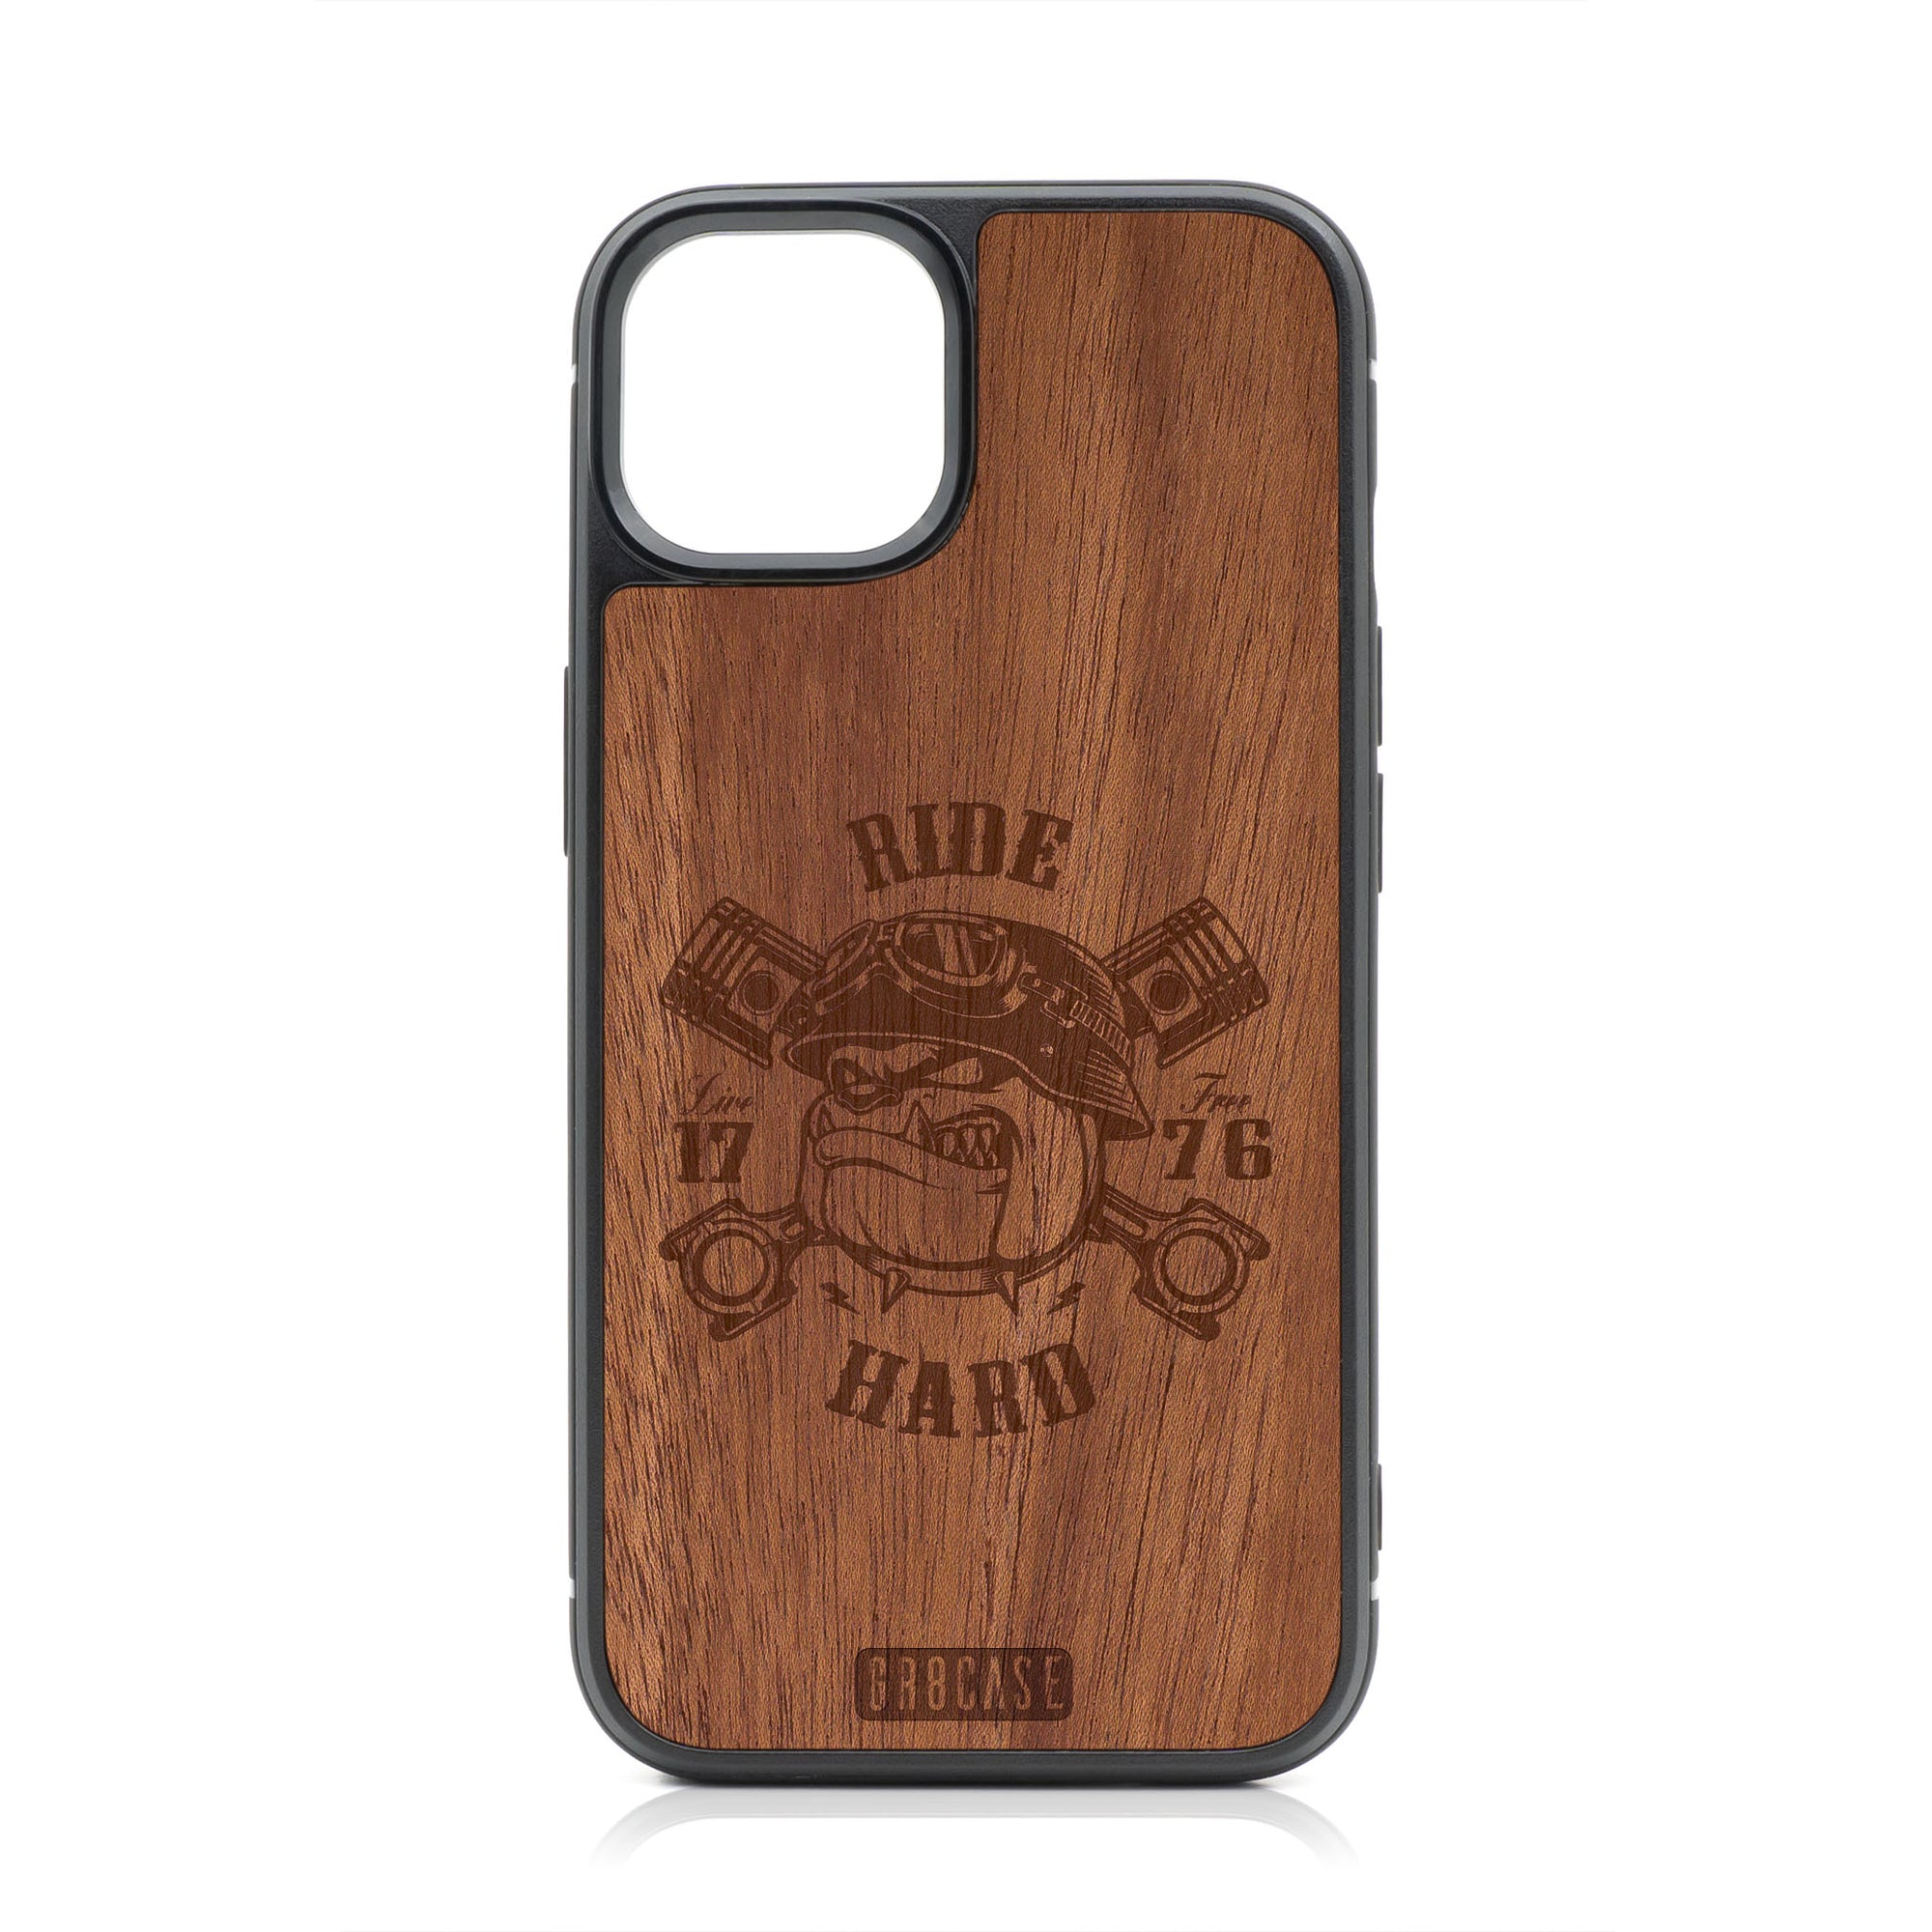 Ride Hard Live Free (Biker Dog) Design Wood Case For iPhone 13